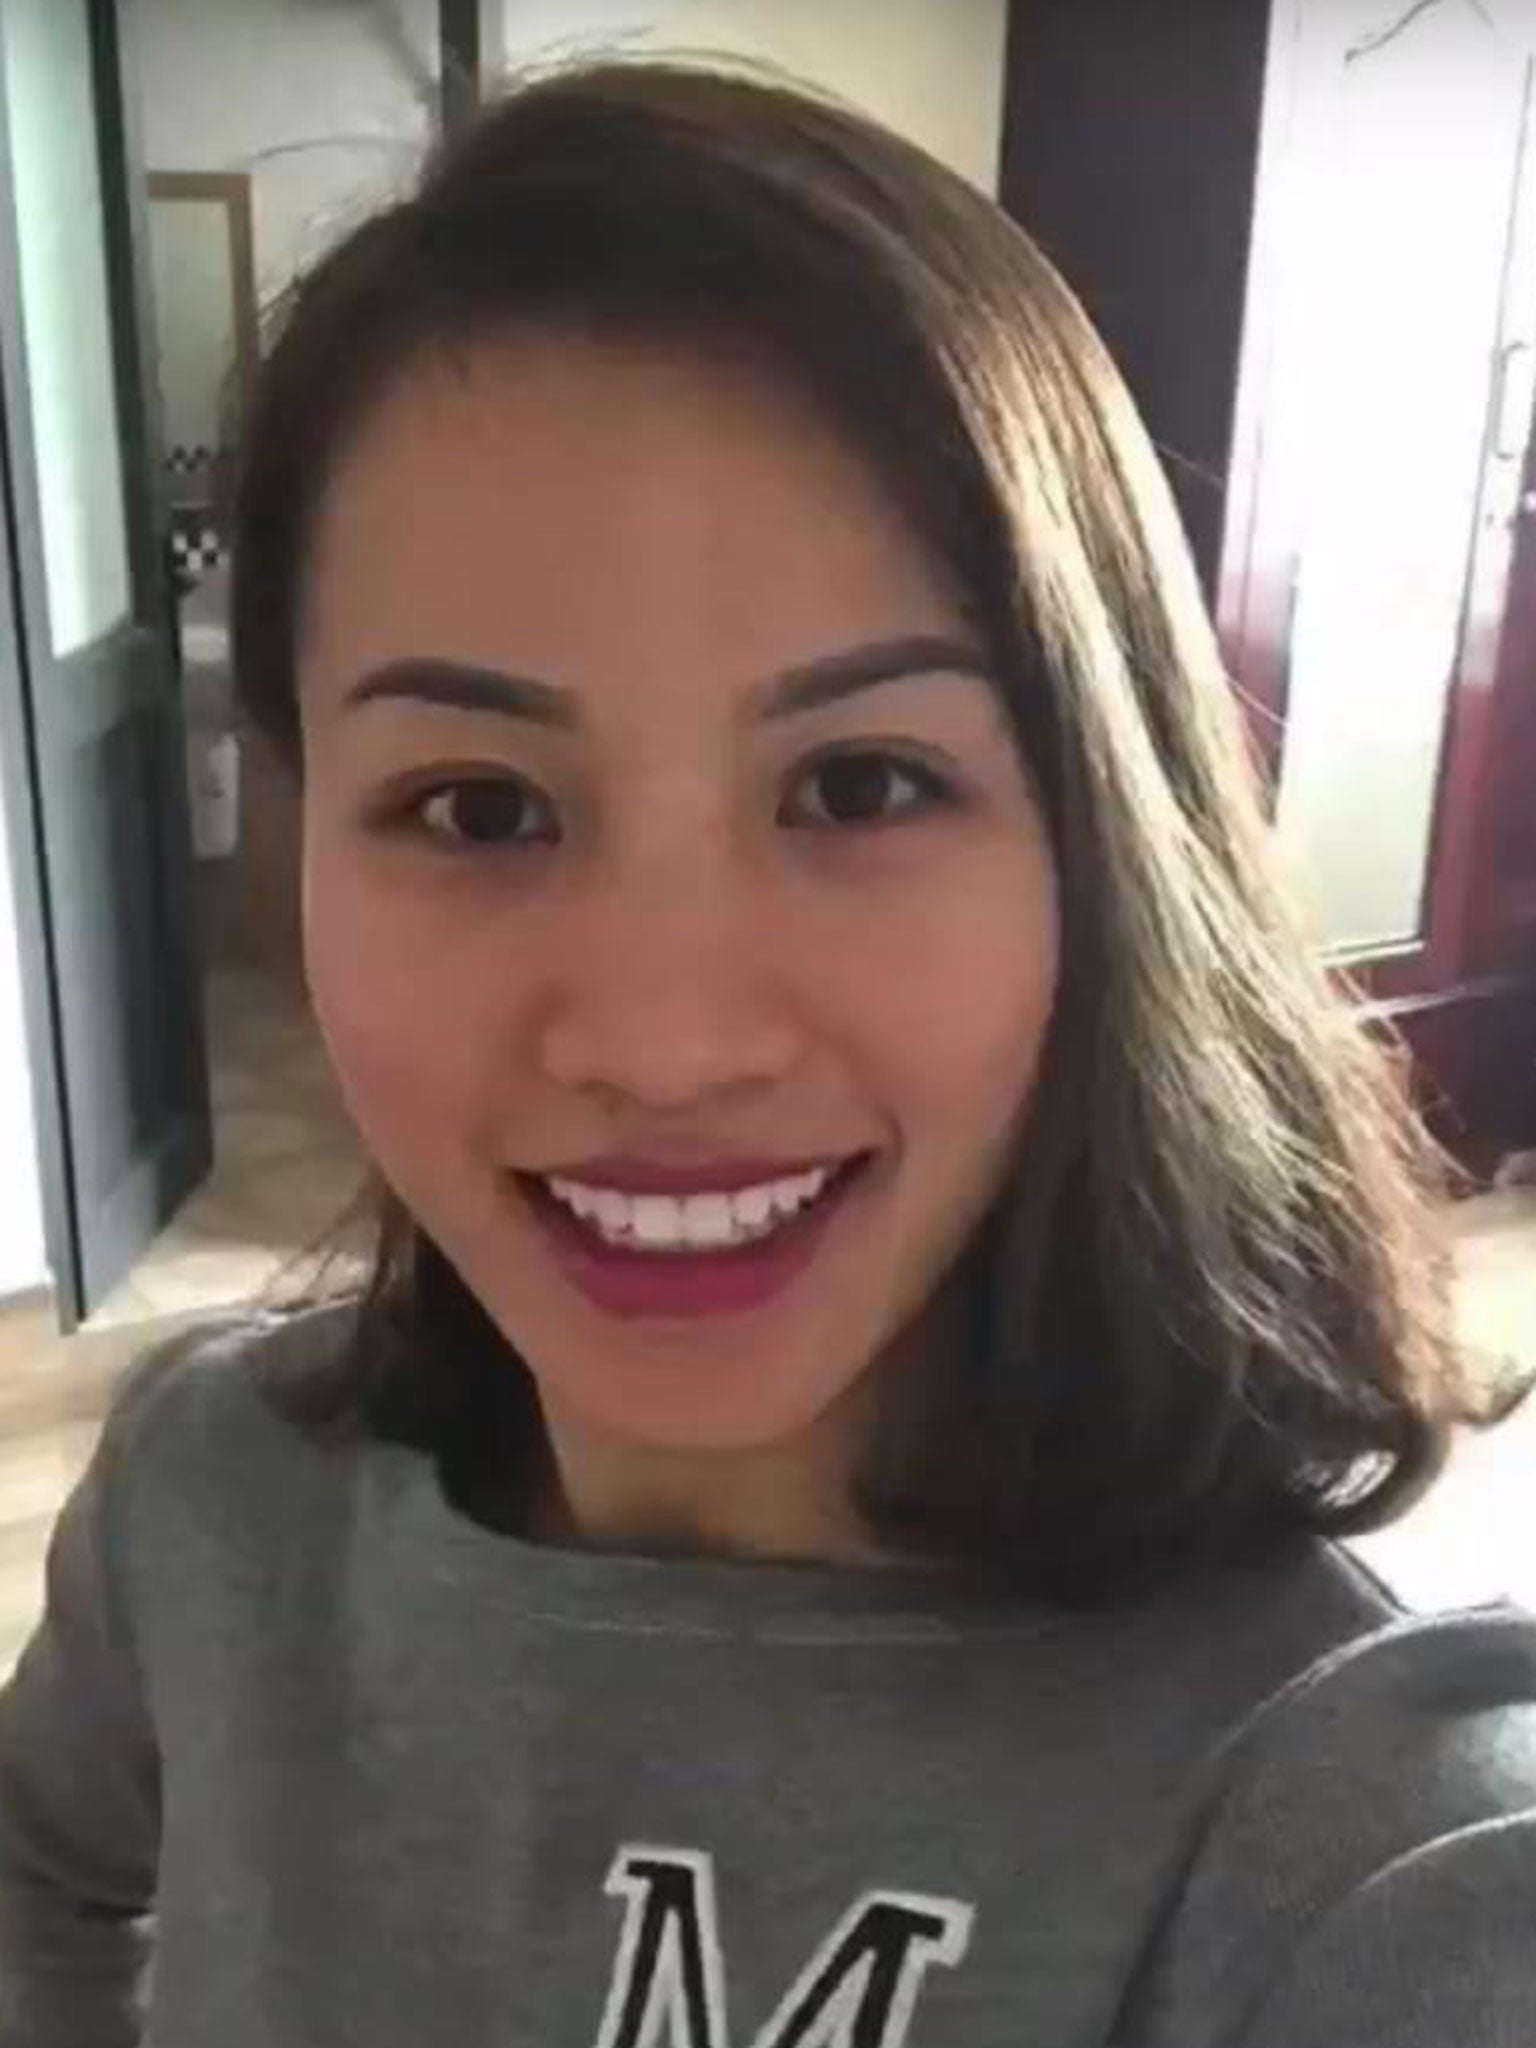 Quyen Ngoc Nguyen, 28, had two young children